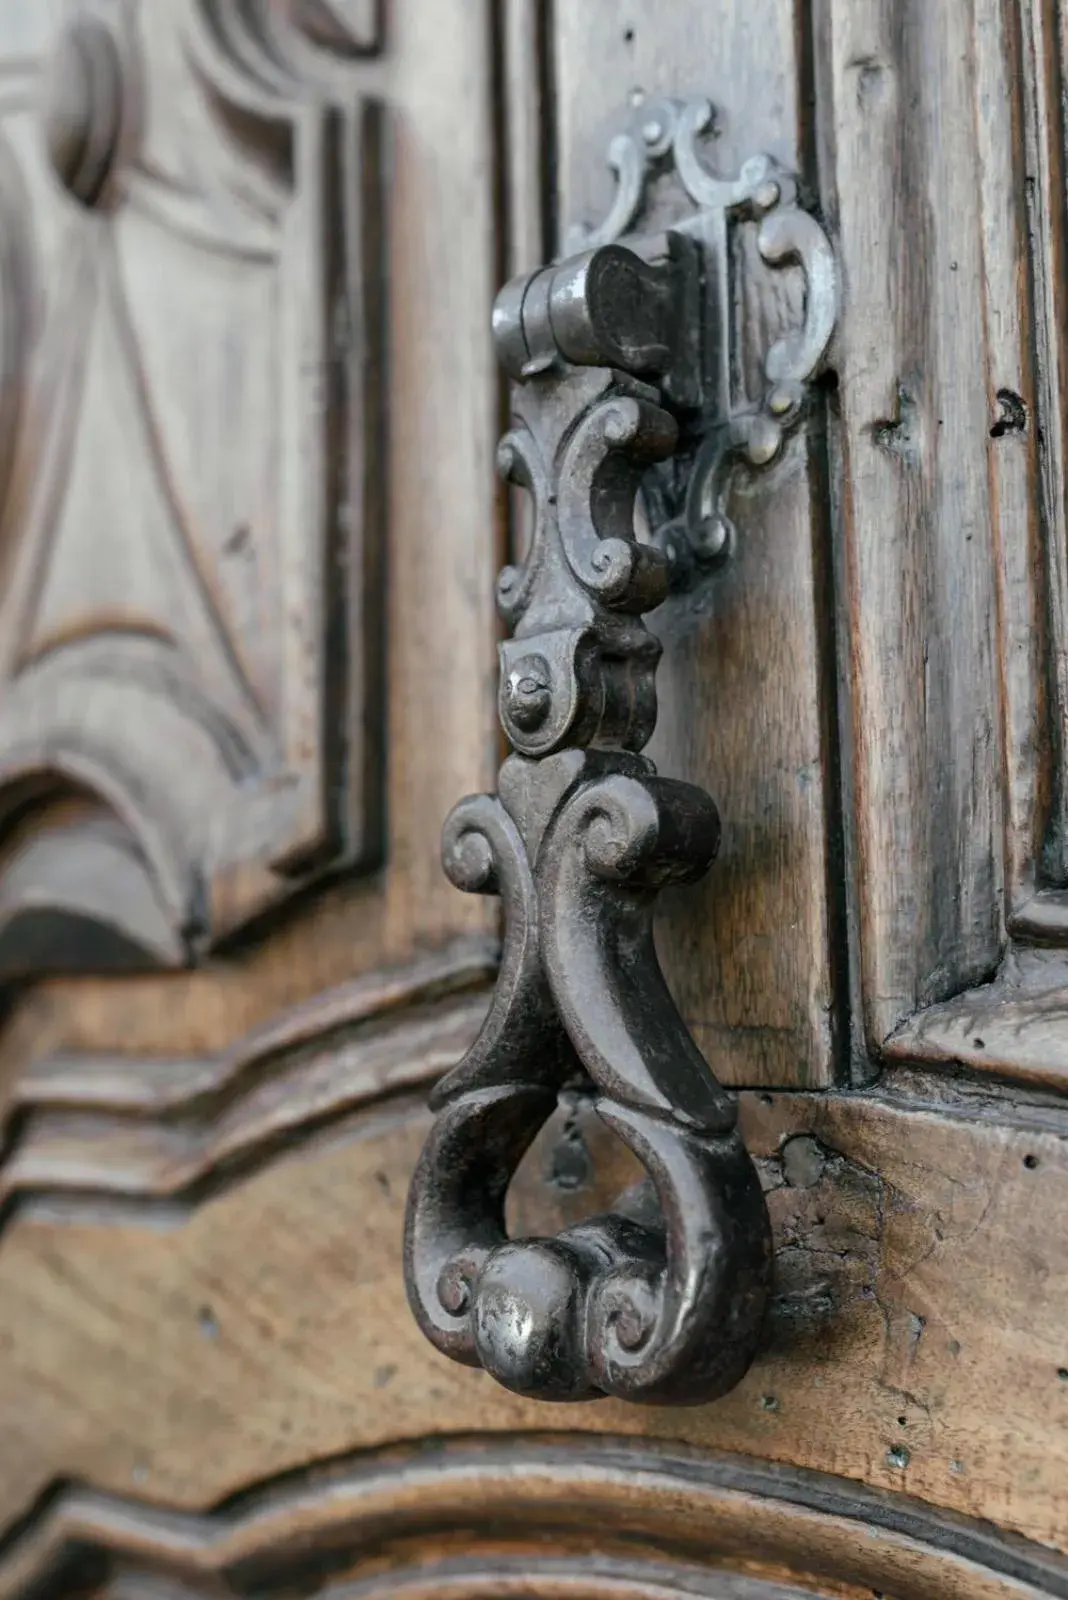 Decorative detail, Facade/Entrance in Albergo Real Castello